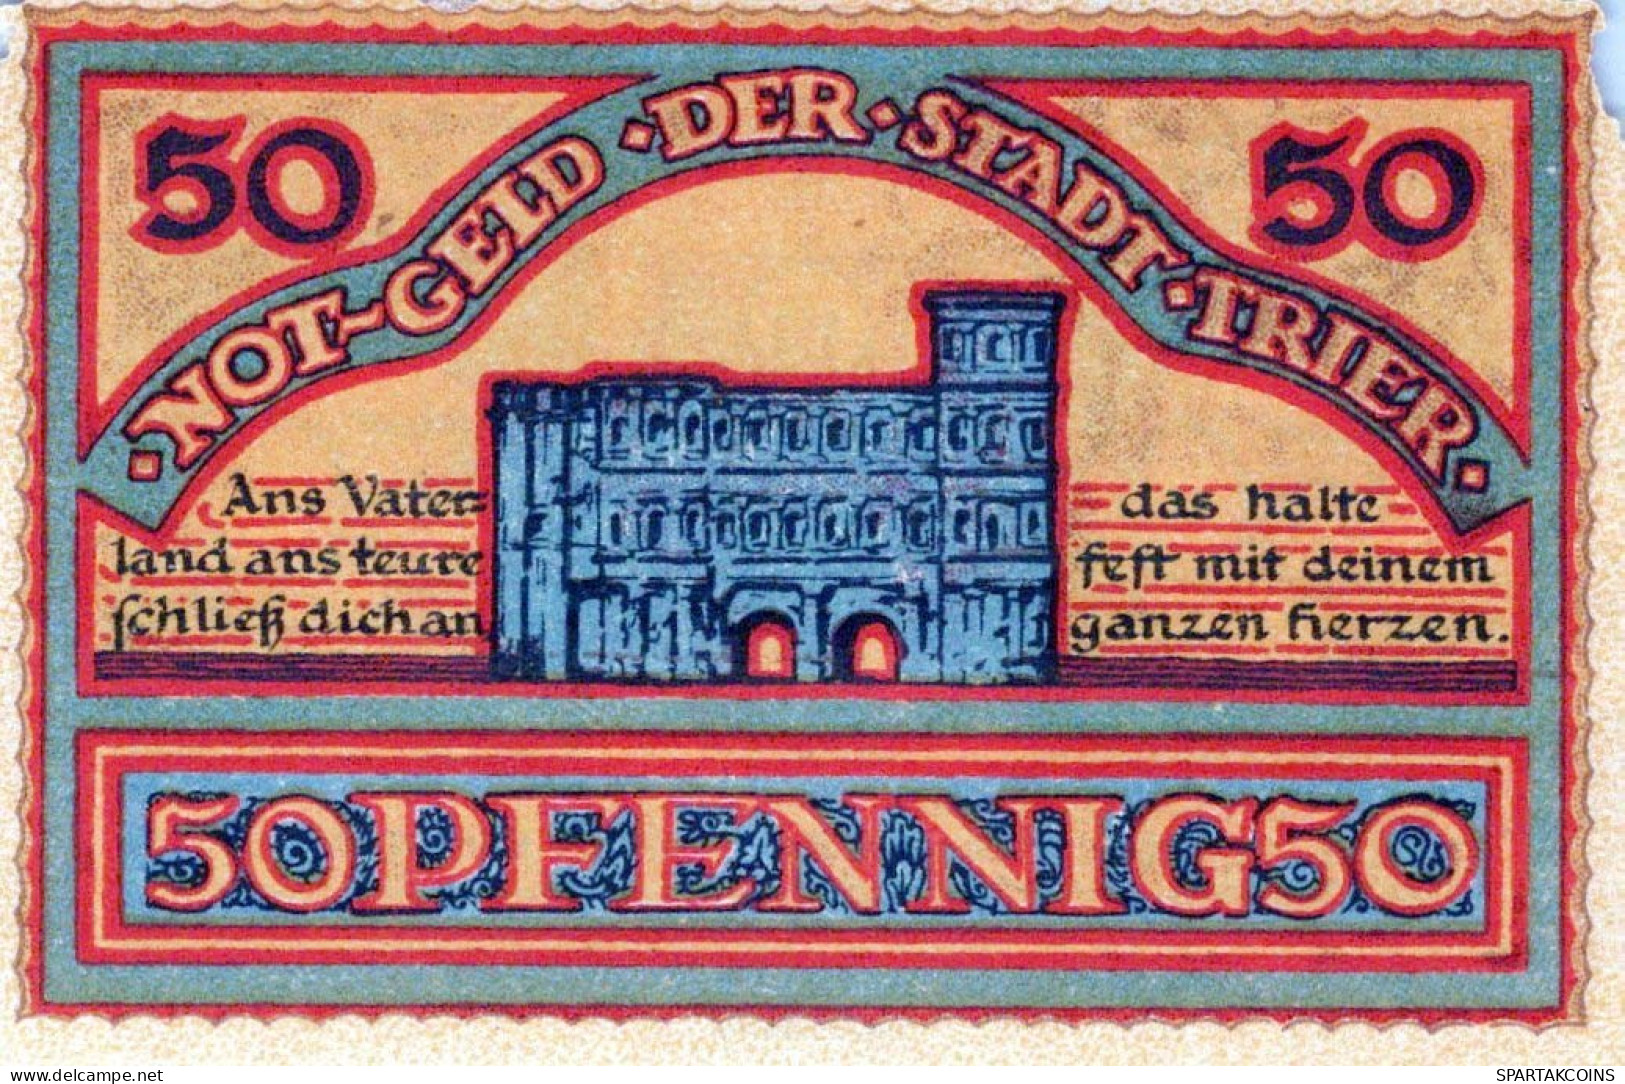 50 PFENNIG 1921 Stadt TRIER Rhine DEUTSCHLAND Notgeld Banknote #PG055 - [11] Local Banknote Issues